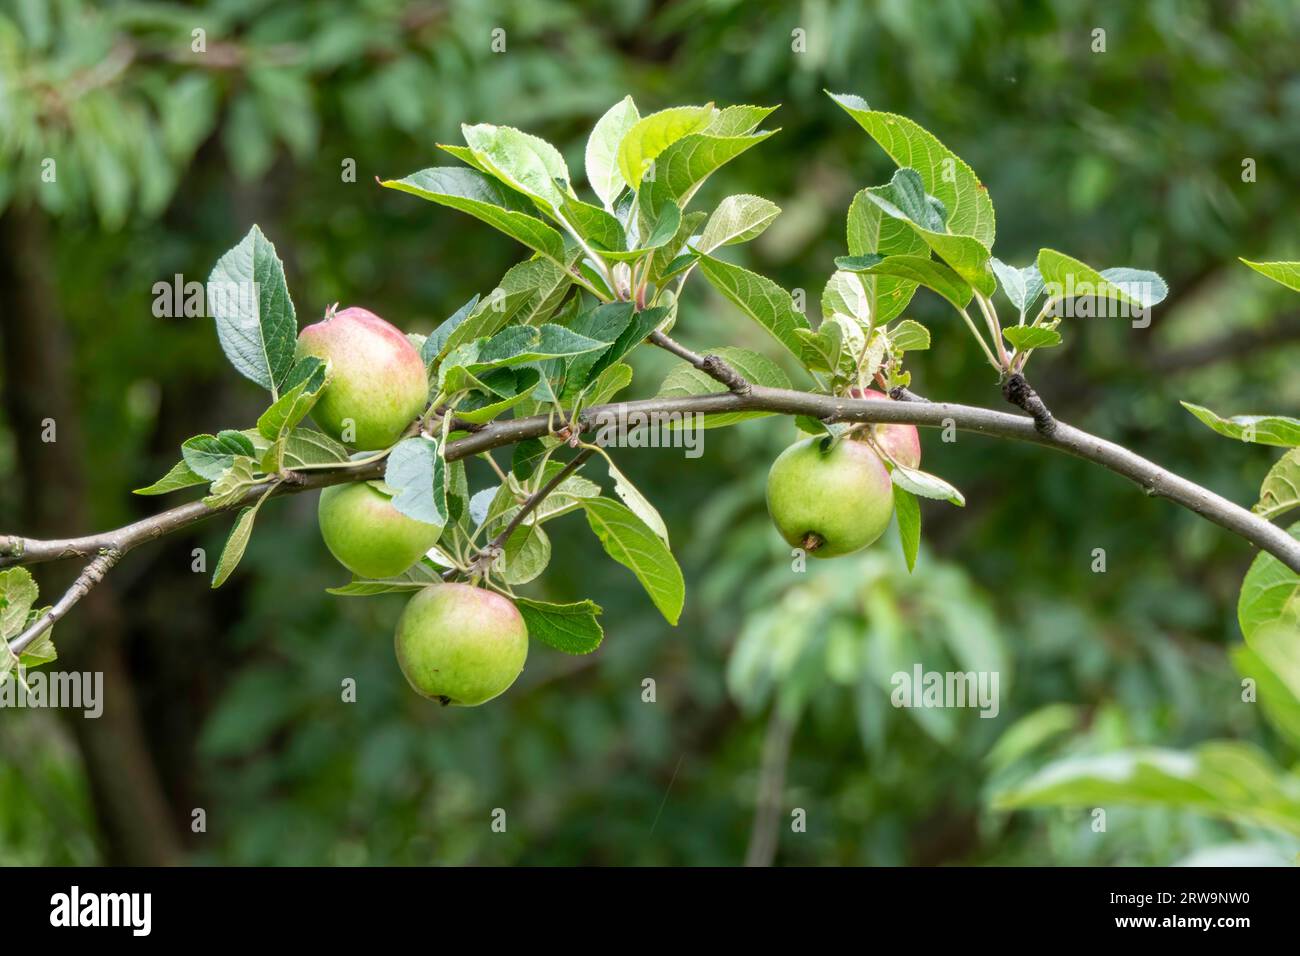 Primo piano di mele non mature appese a un ramo. Le mele sono verdi e iniziano con un colore rosso. Le foglie sono verdi e sane, e fornisce una str Foto Stock